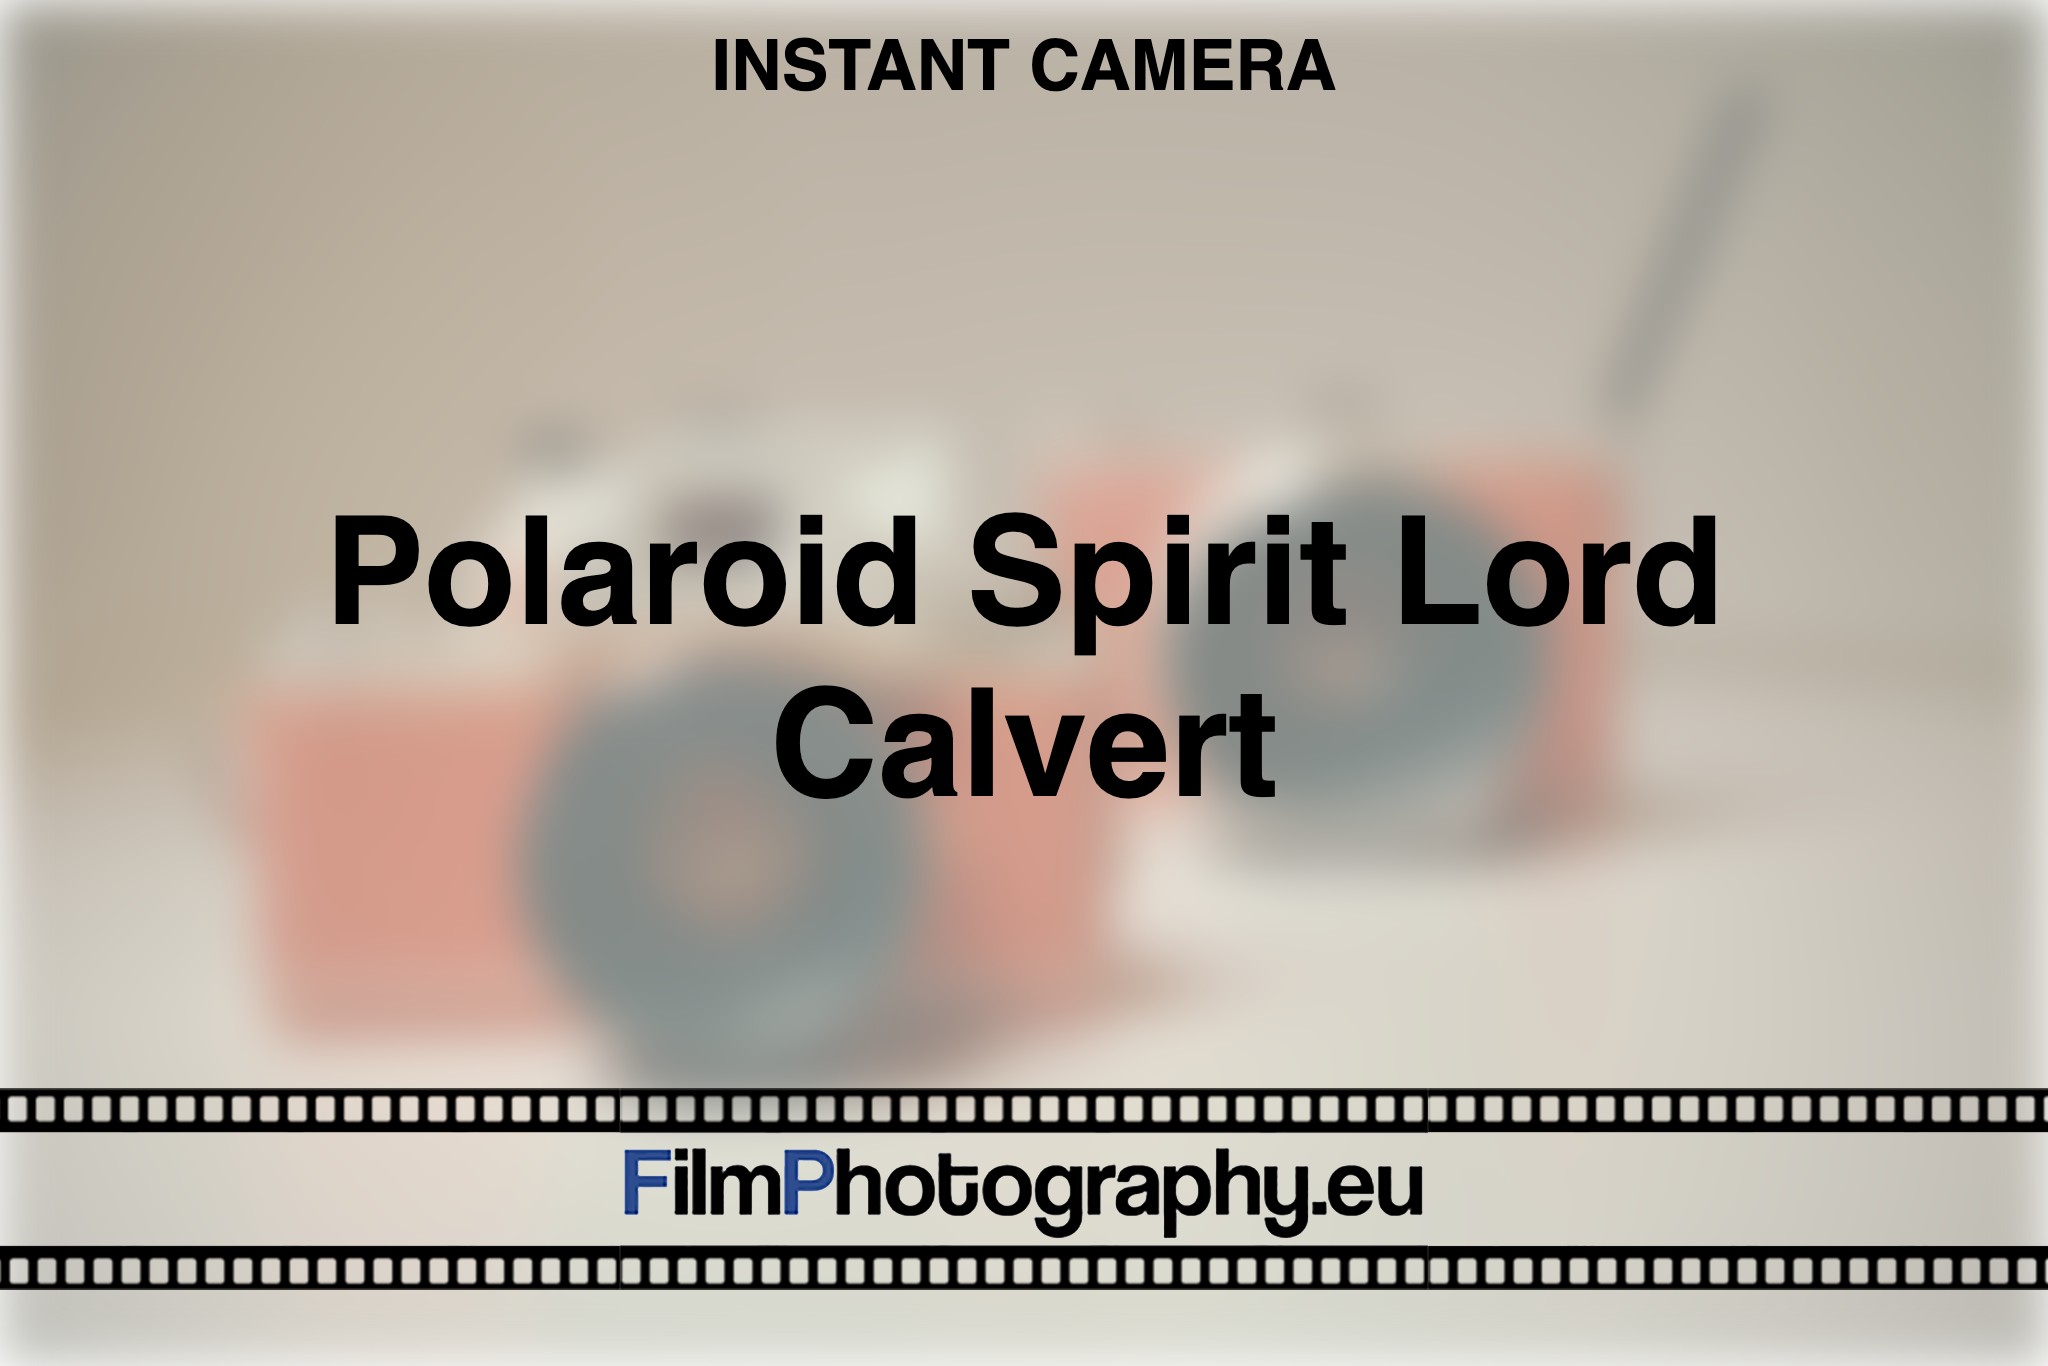 polaroid-spirit-lord-calvert-instant-camera-bnv